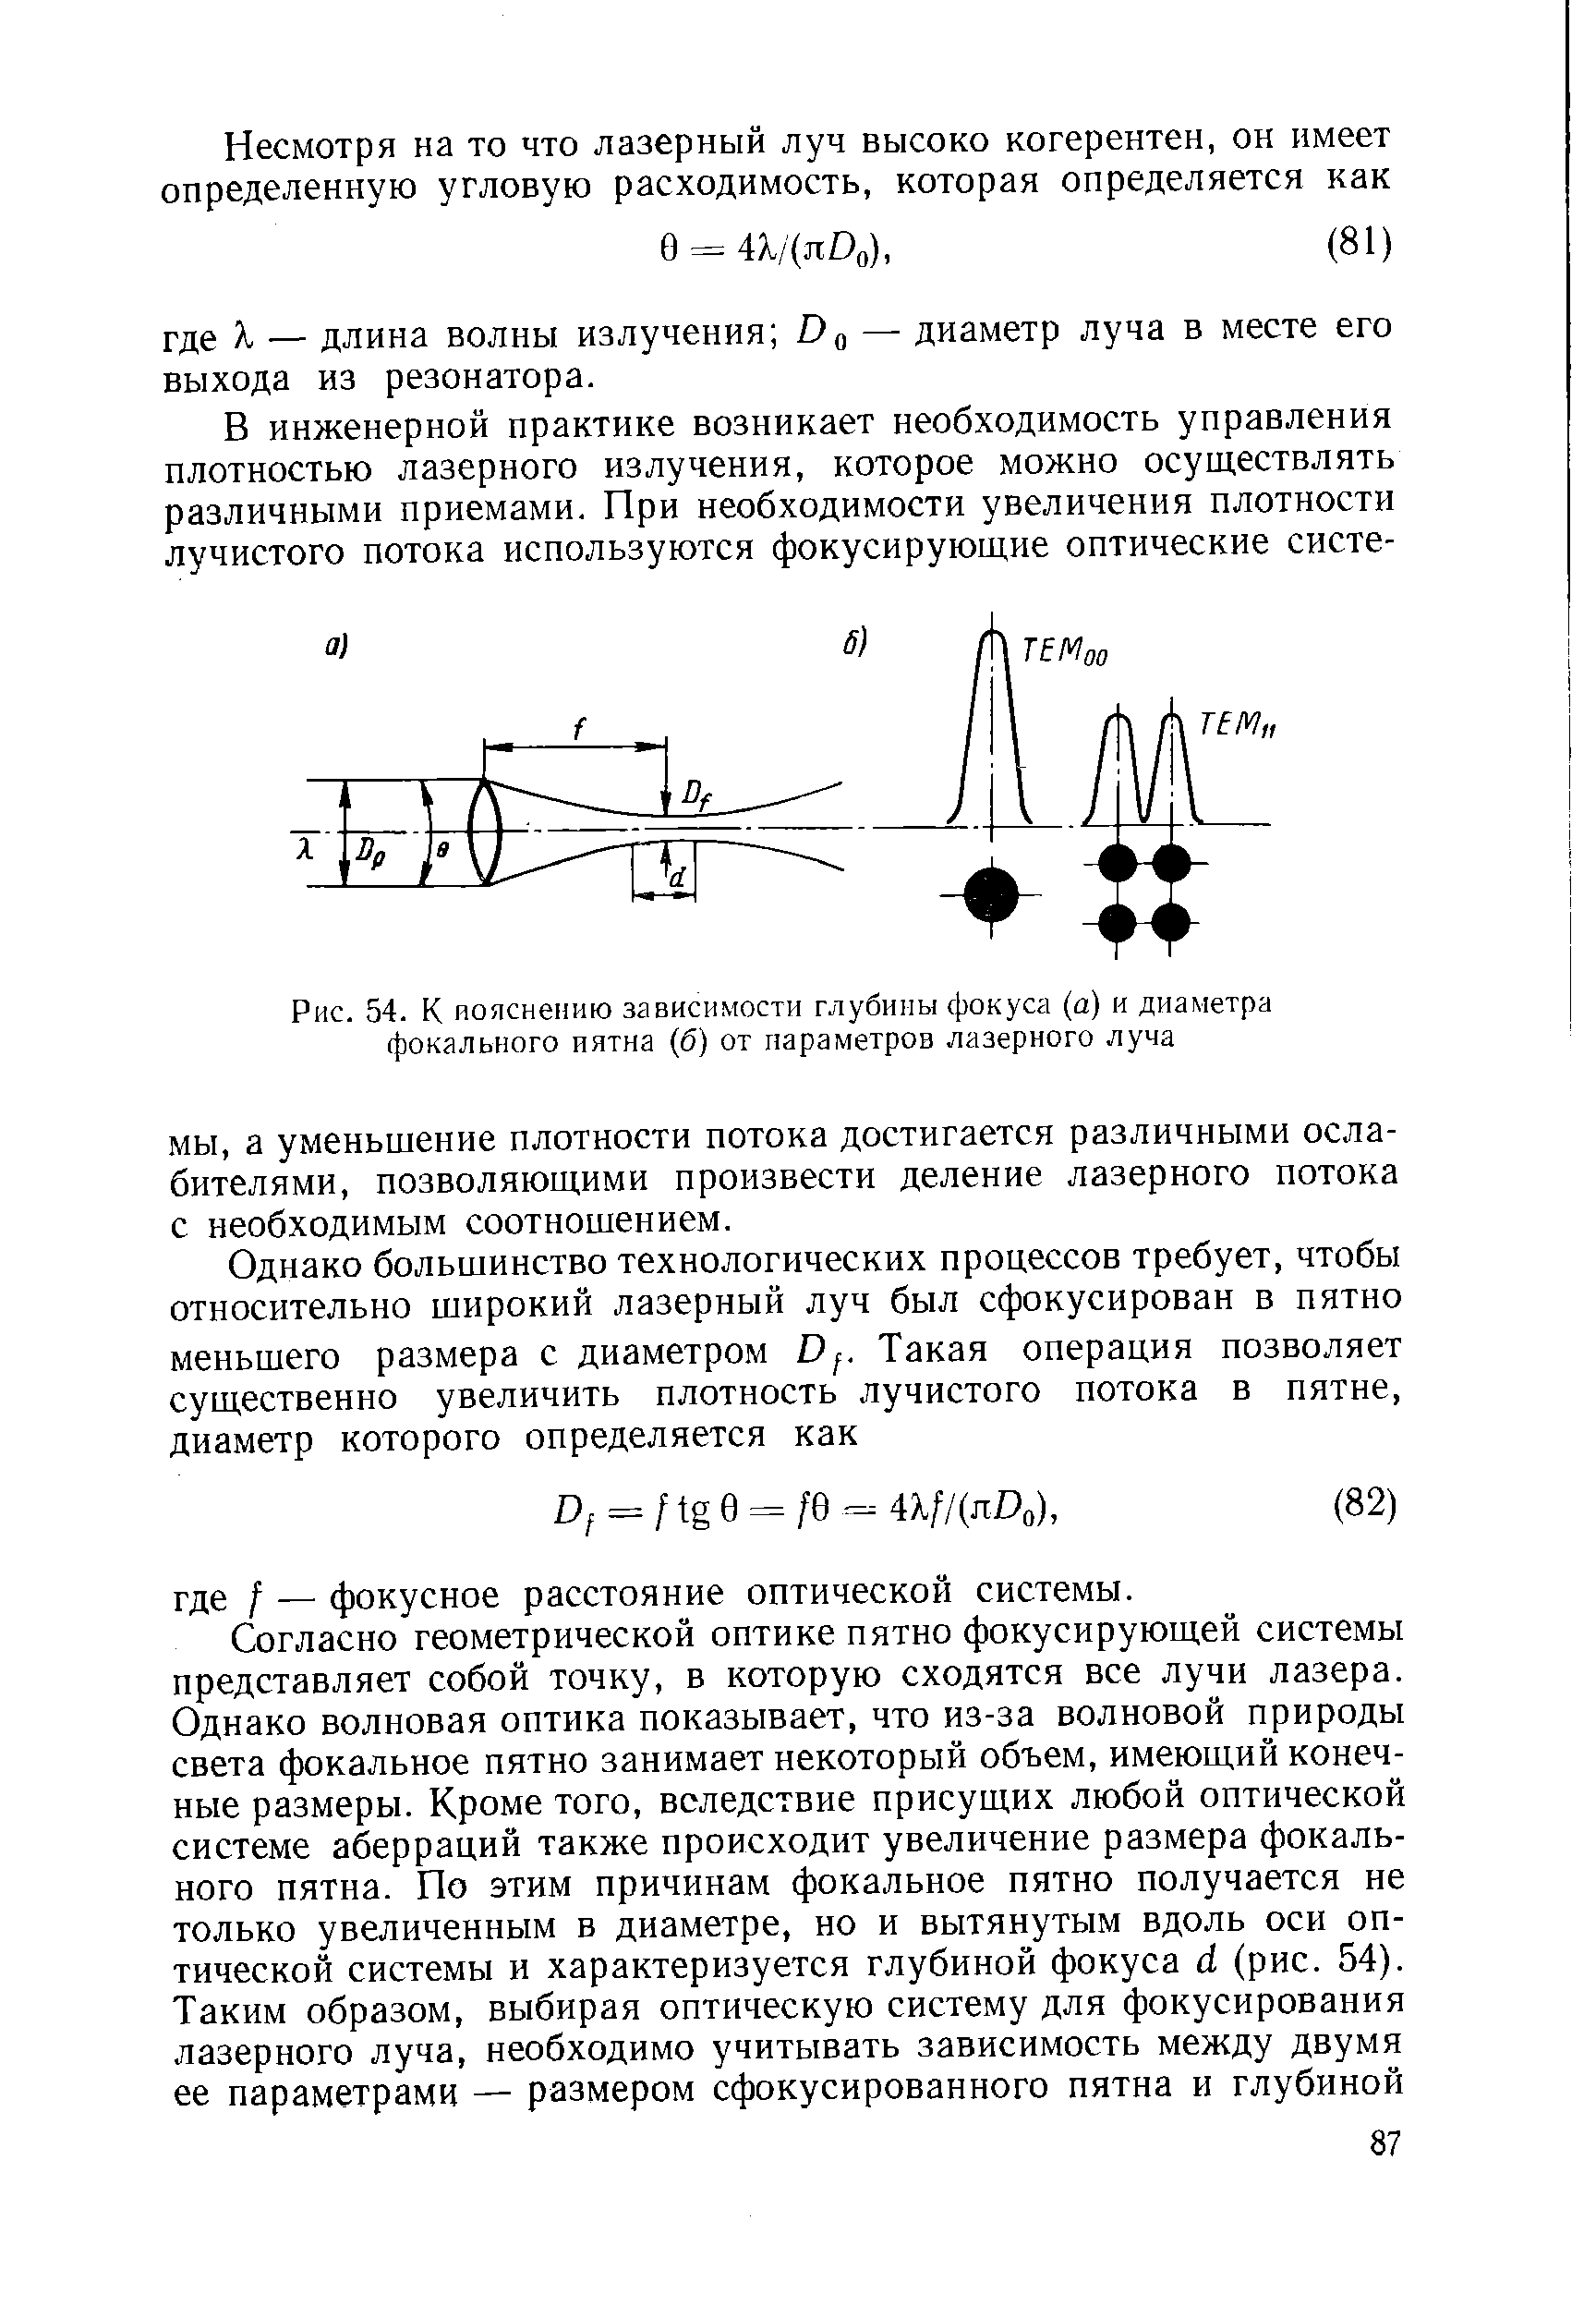 Рис. 54. К пояснению зависимости глубины фокуса (а) и диаметра фокального иятна (б) от параметров лазерного луча
